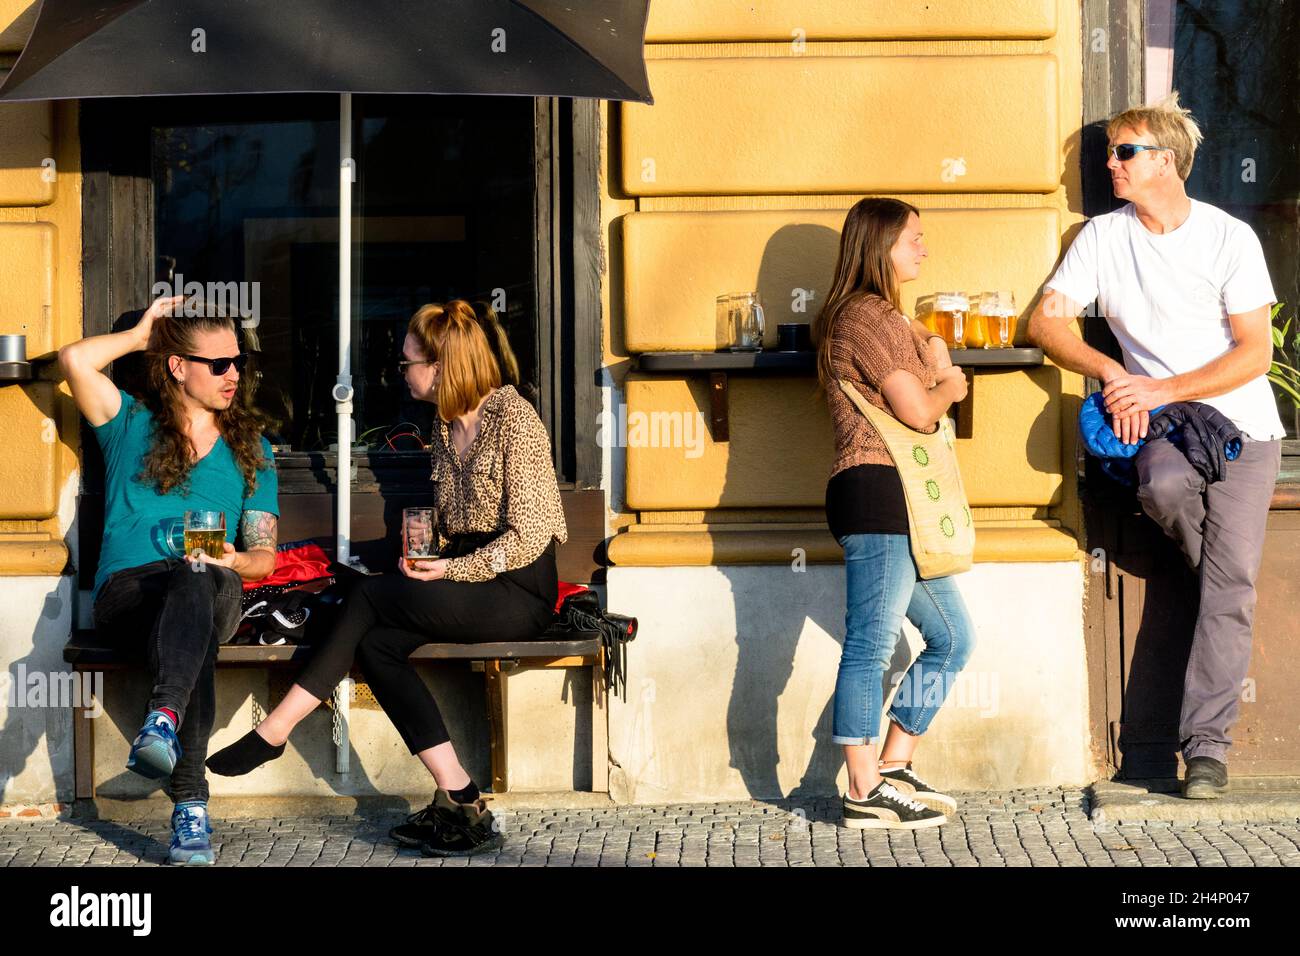 Turistas en Praga beber cerveza fuera de un bar Foto de stock